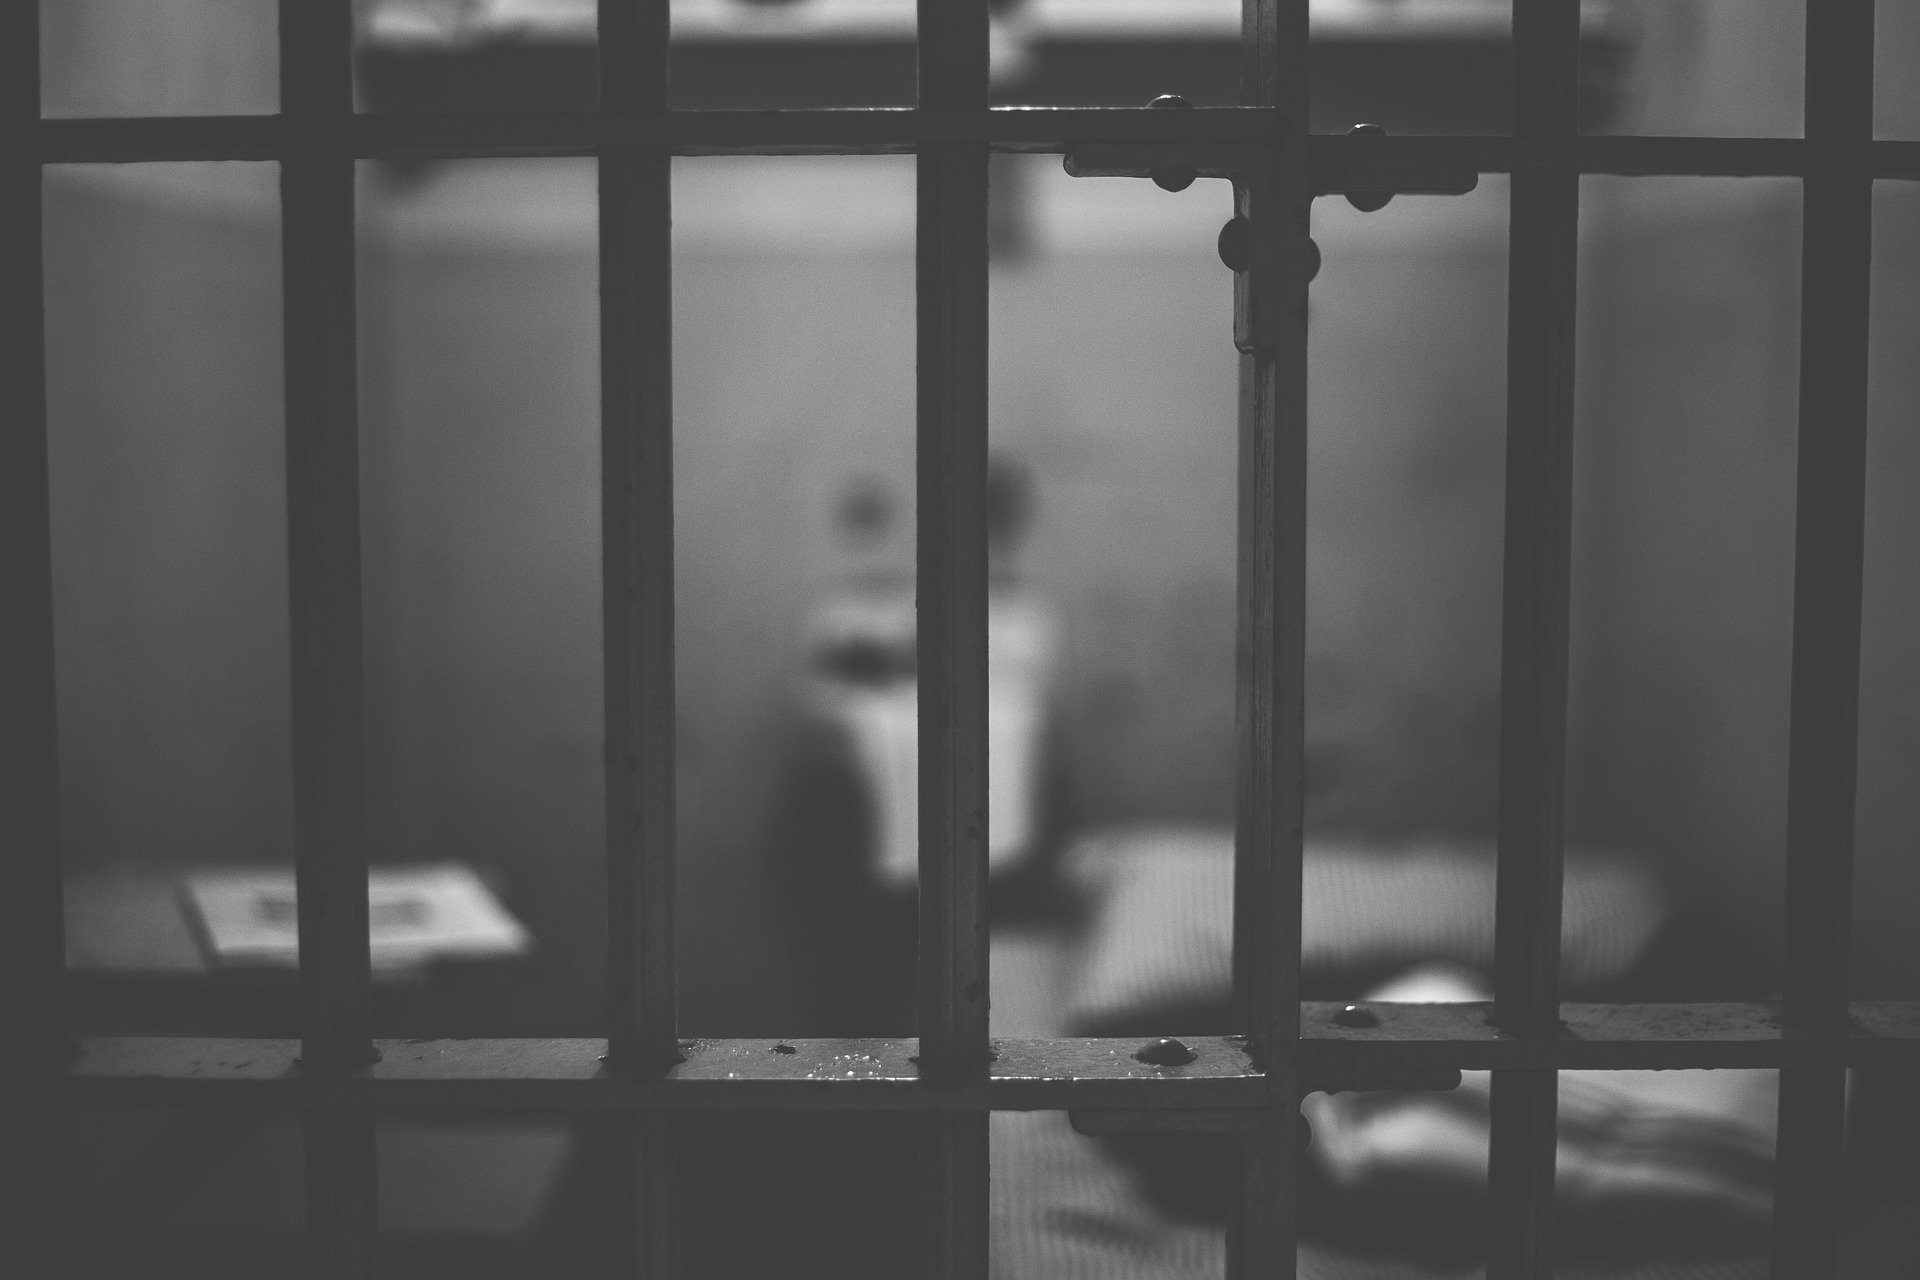 Benefici Penitenziari: cosa prevede la riforma Cartabia?